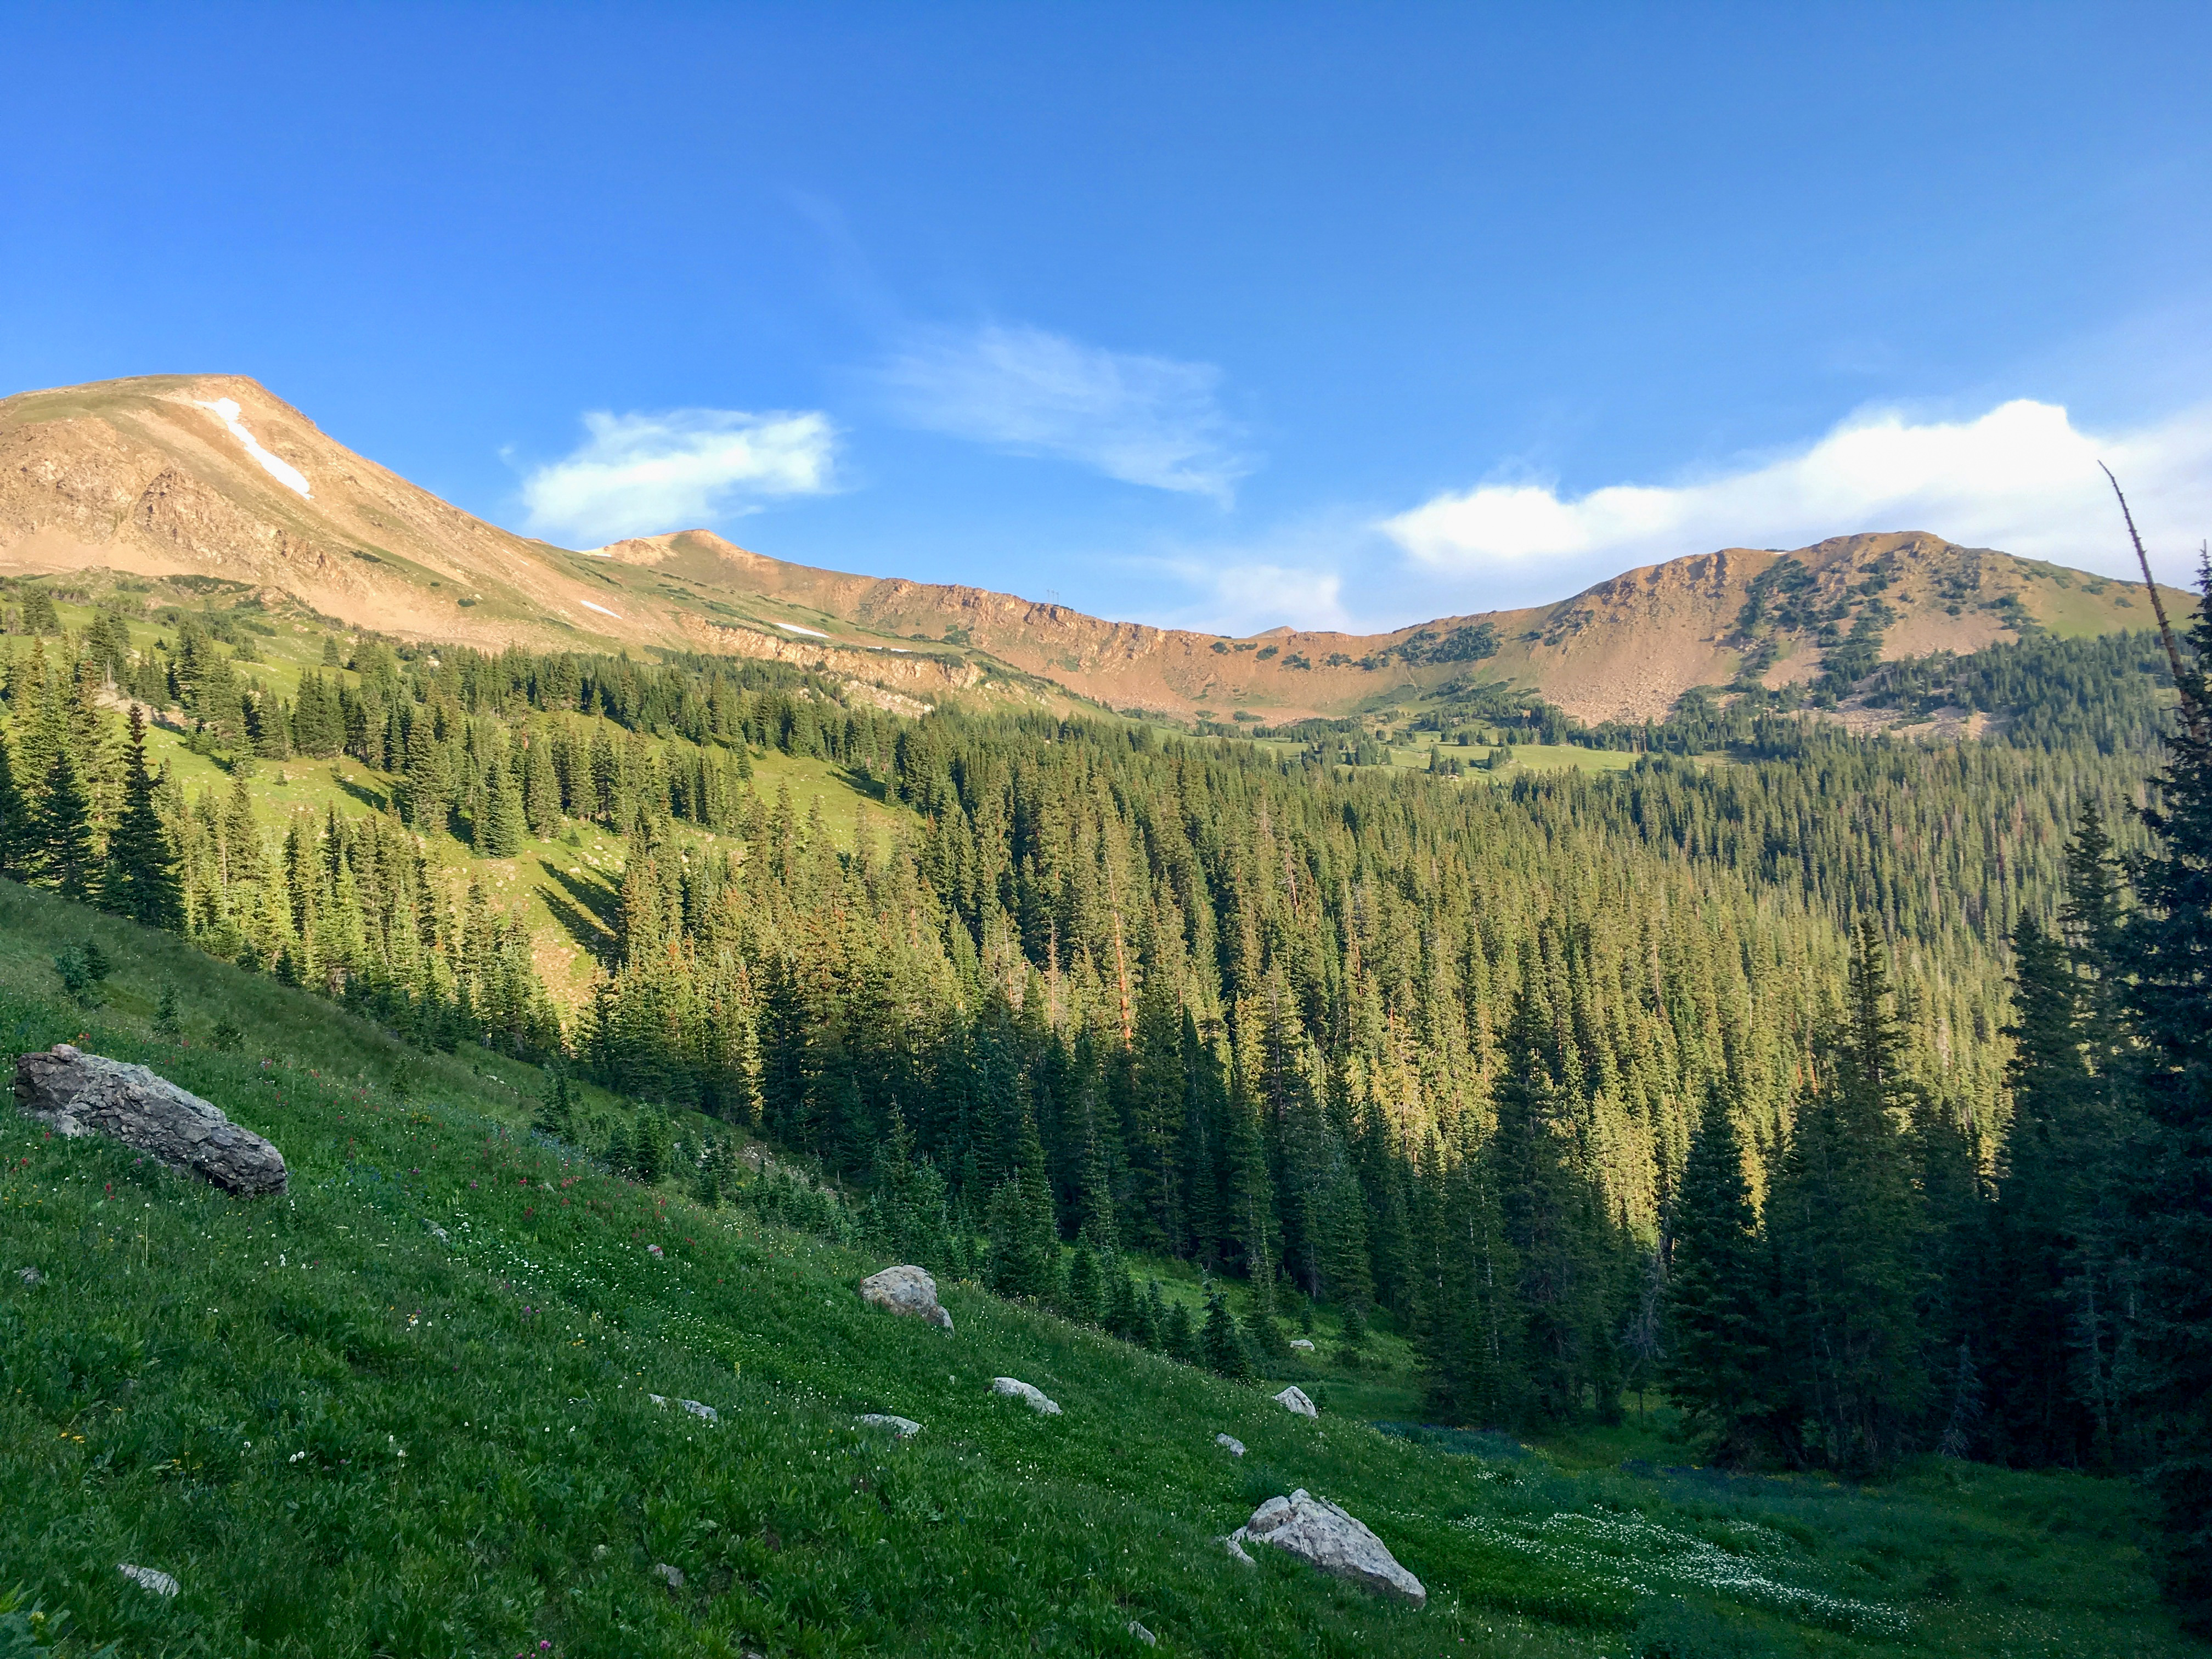 2017 - Butler Gulch, James Peak Wilderness, Colorado. August, 2017.